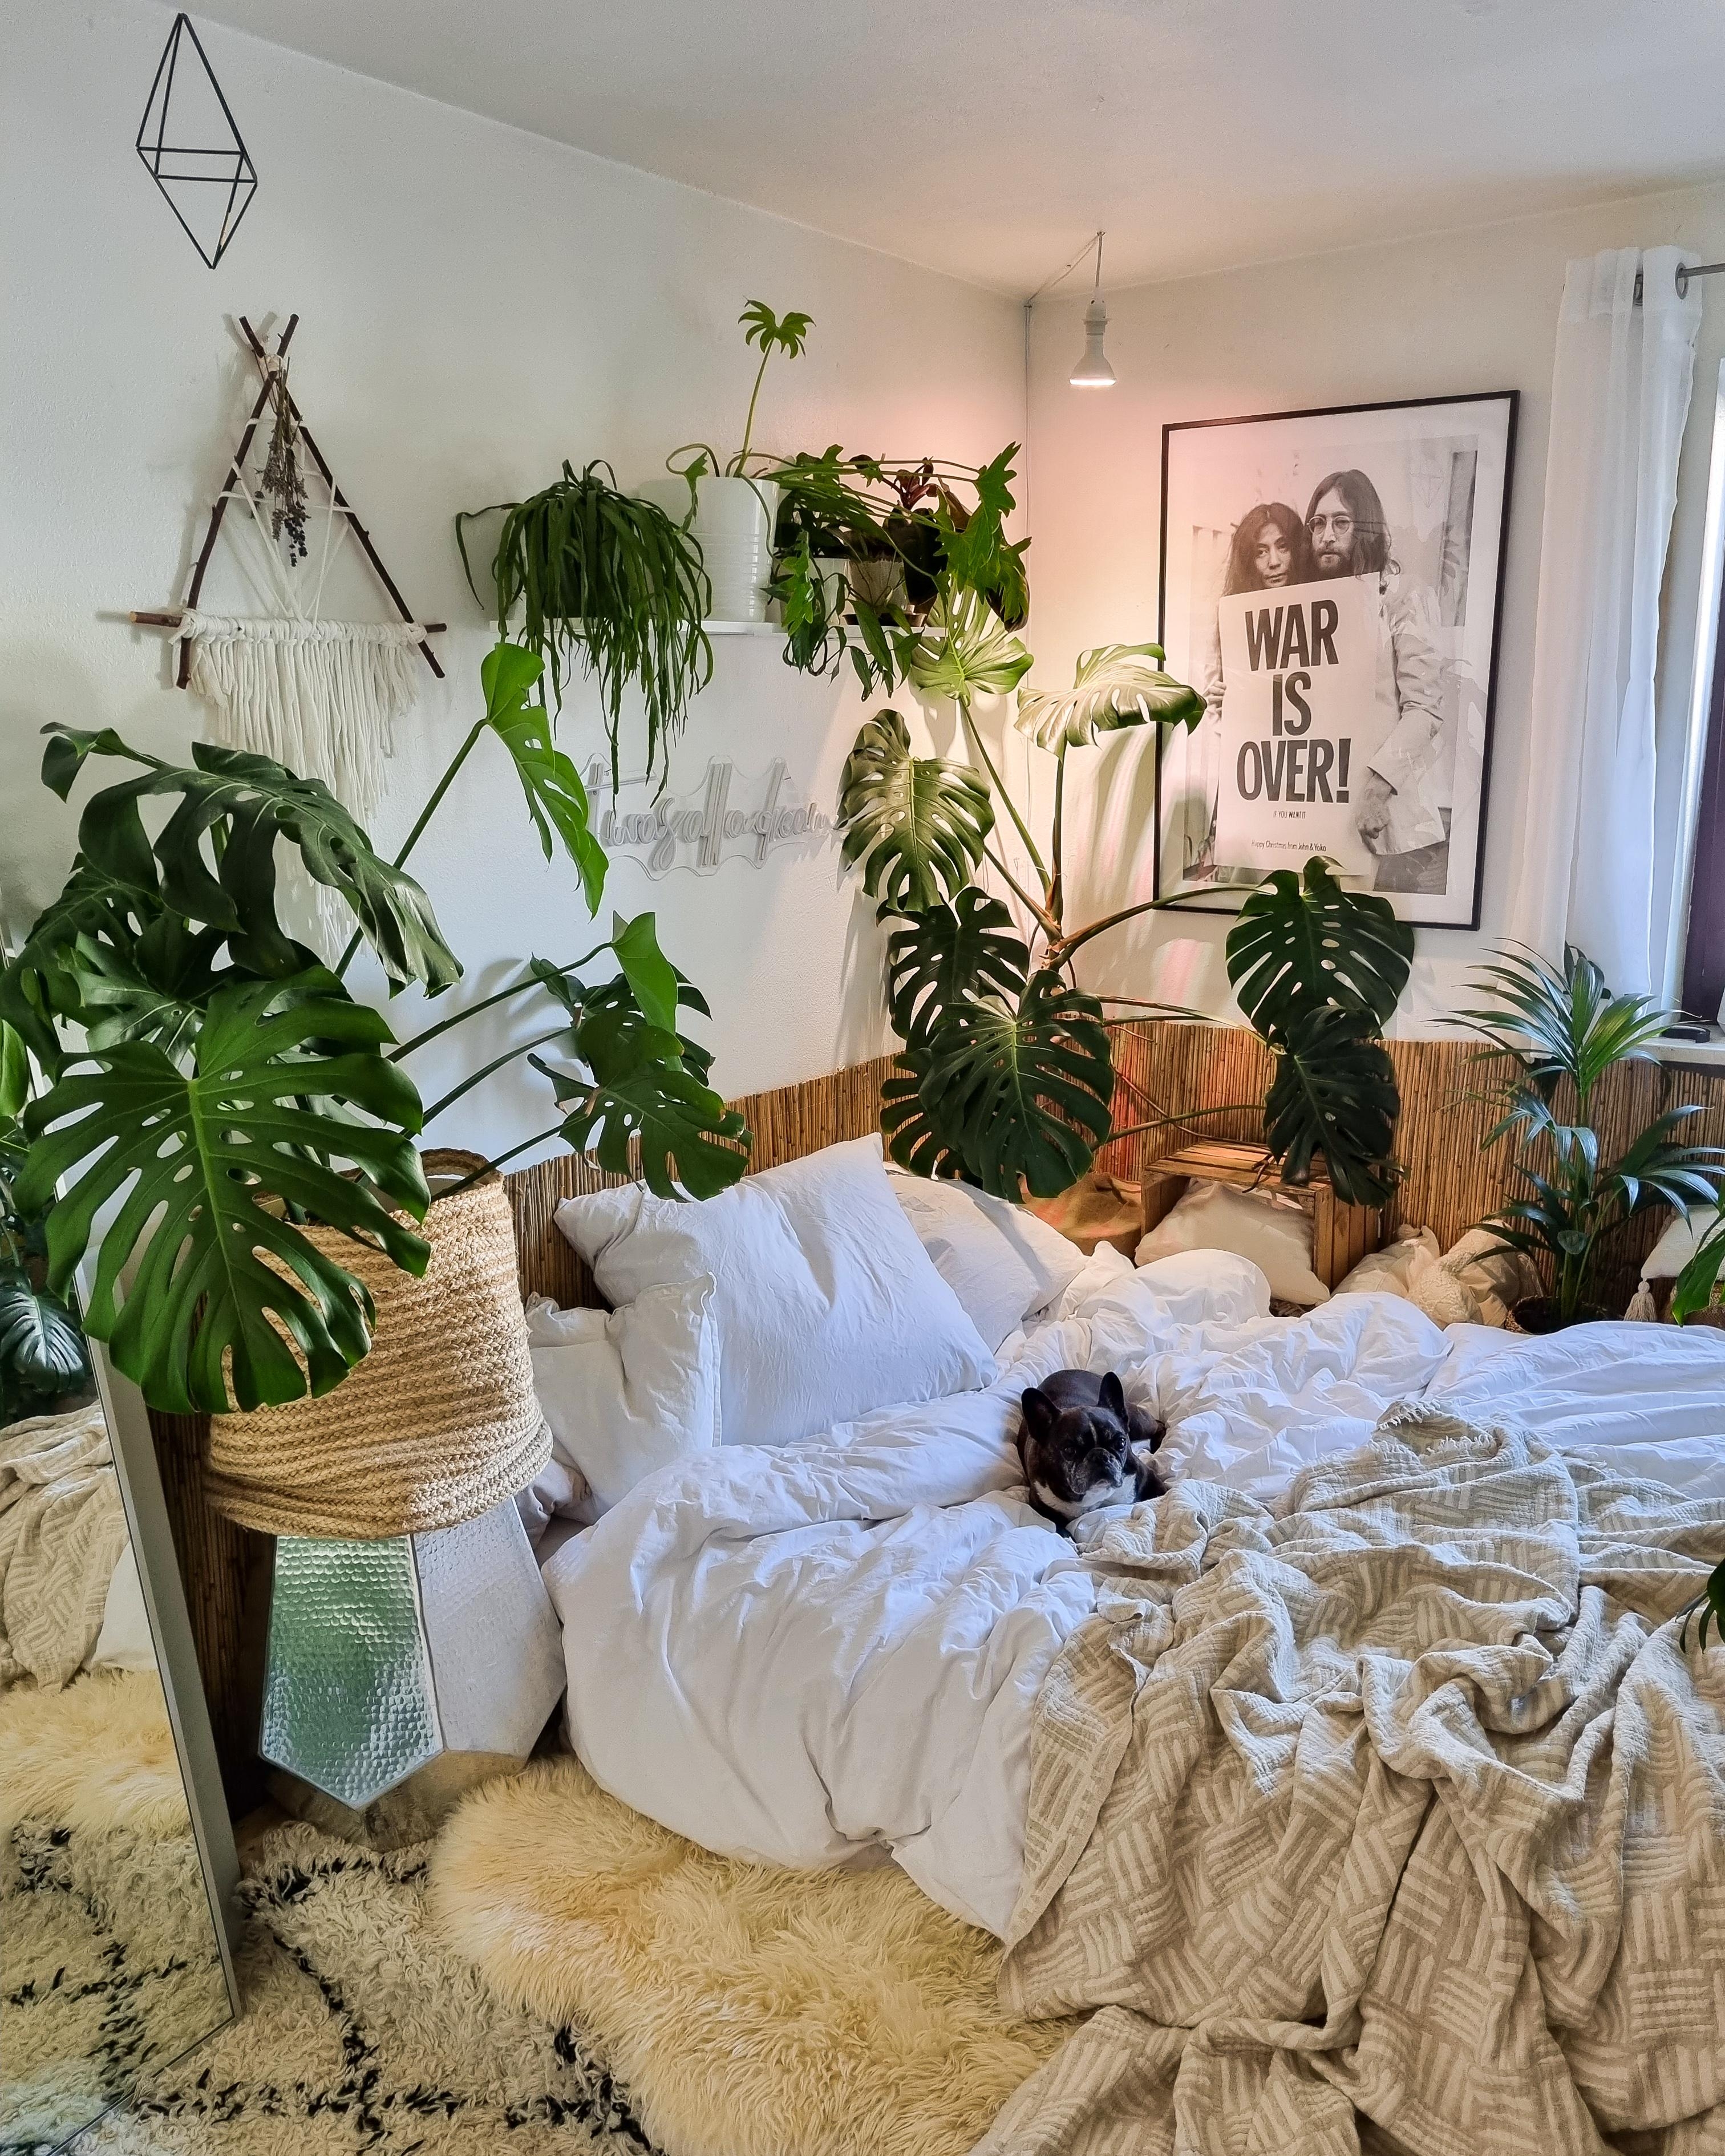 Mittwoch ❤ #Schlafzimmer #urbanjungle #Pflanzen #couchstyle #Bett #Decke #Bettdecke #Kissen #Paletten #Monstera 